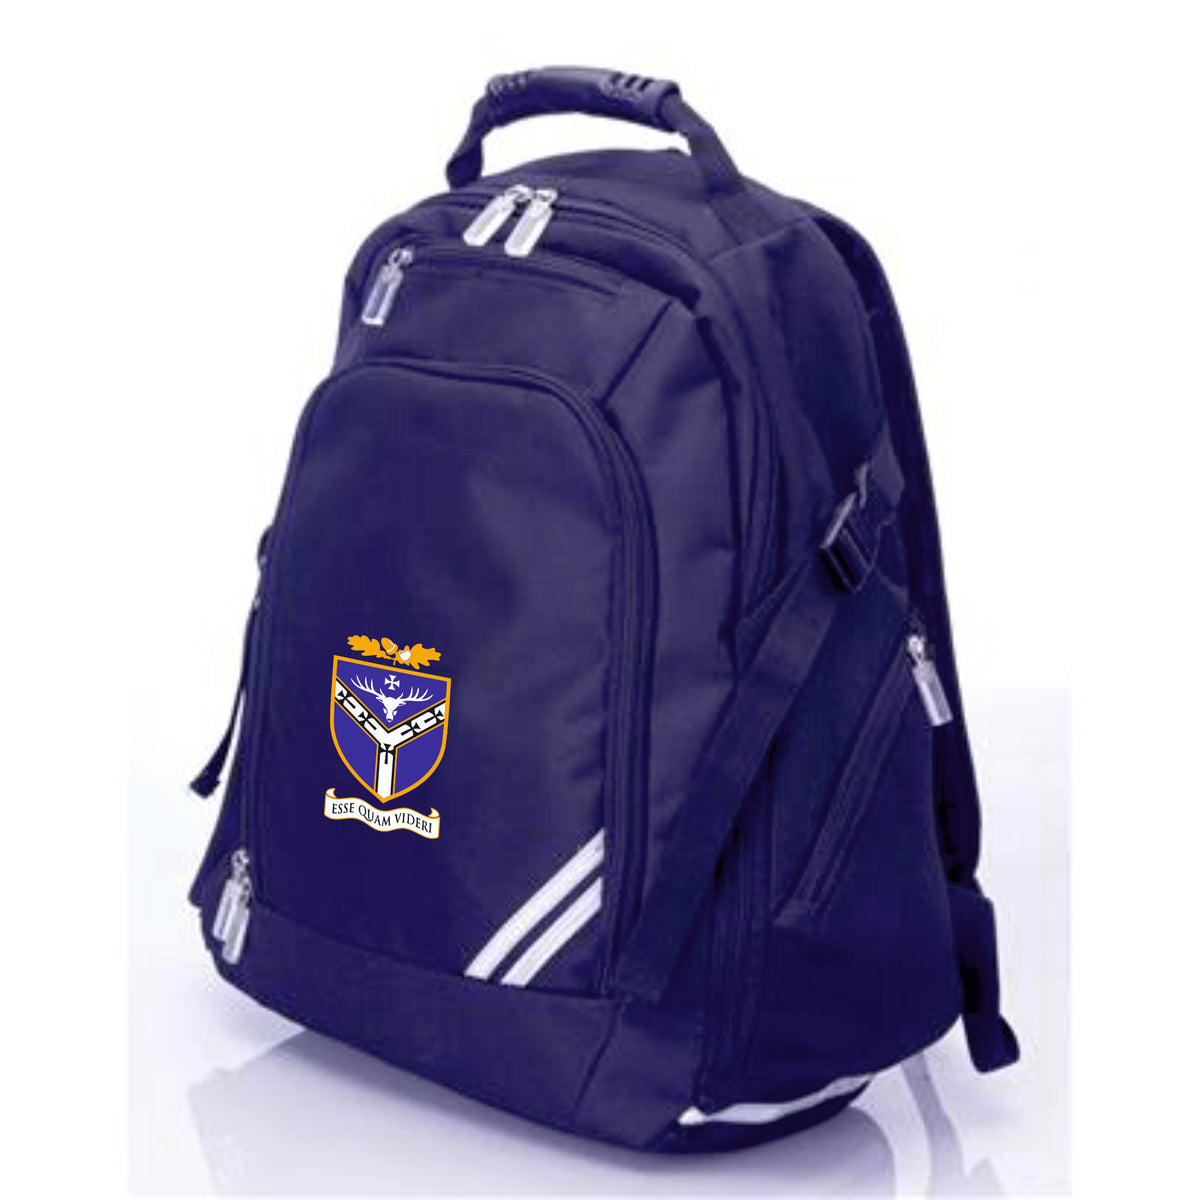 Forrest School Backpack